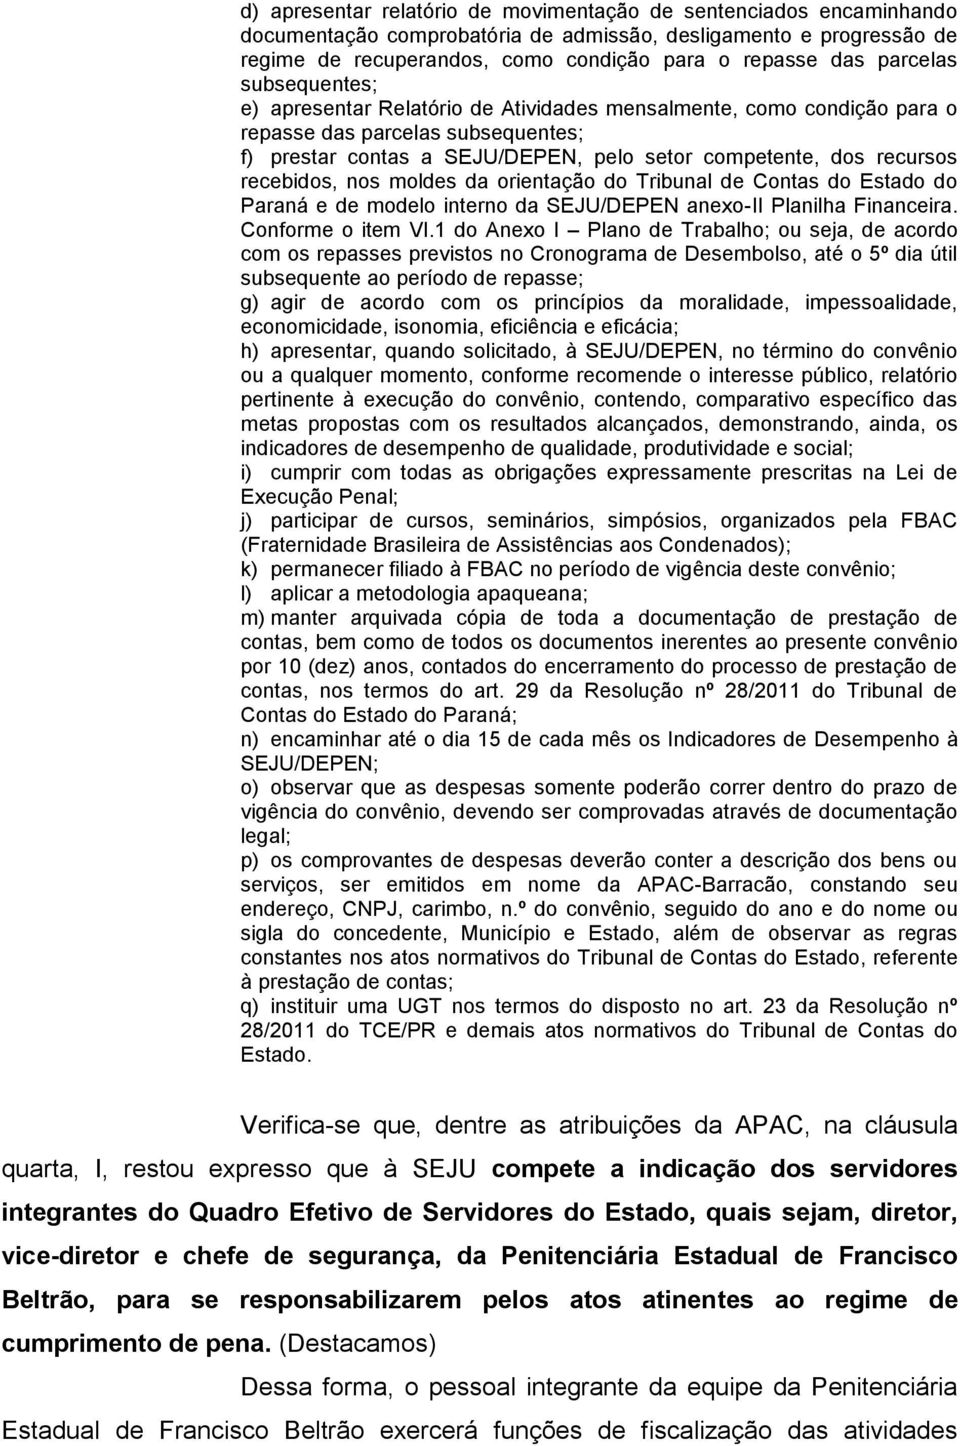 recebidos, nos moldes da orientação do Tribunal de Contas do Estado do Paraná e de modelo interno da SEJU/DEPEN anexo-ii Planilha Financeira. Conforme o item VI.